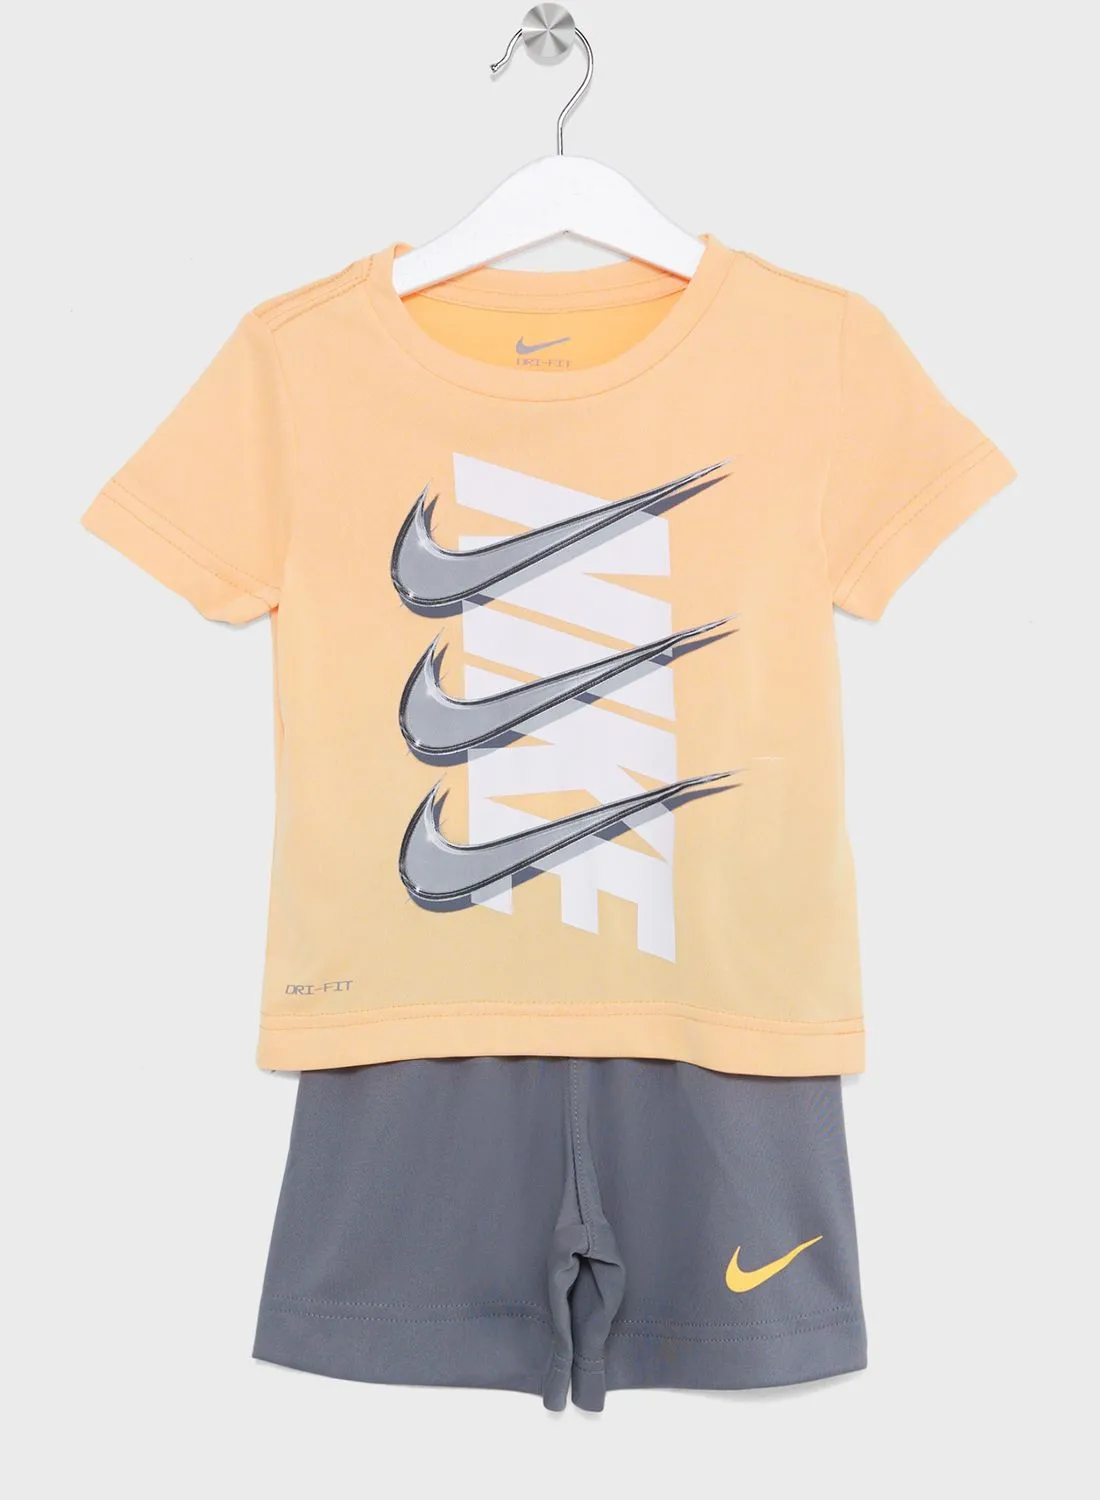 Nike Infant Dri-Fit Dropset T-Shirt Set